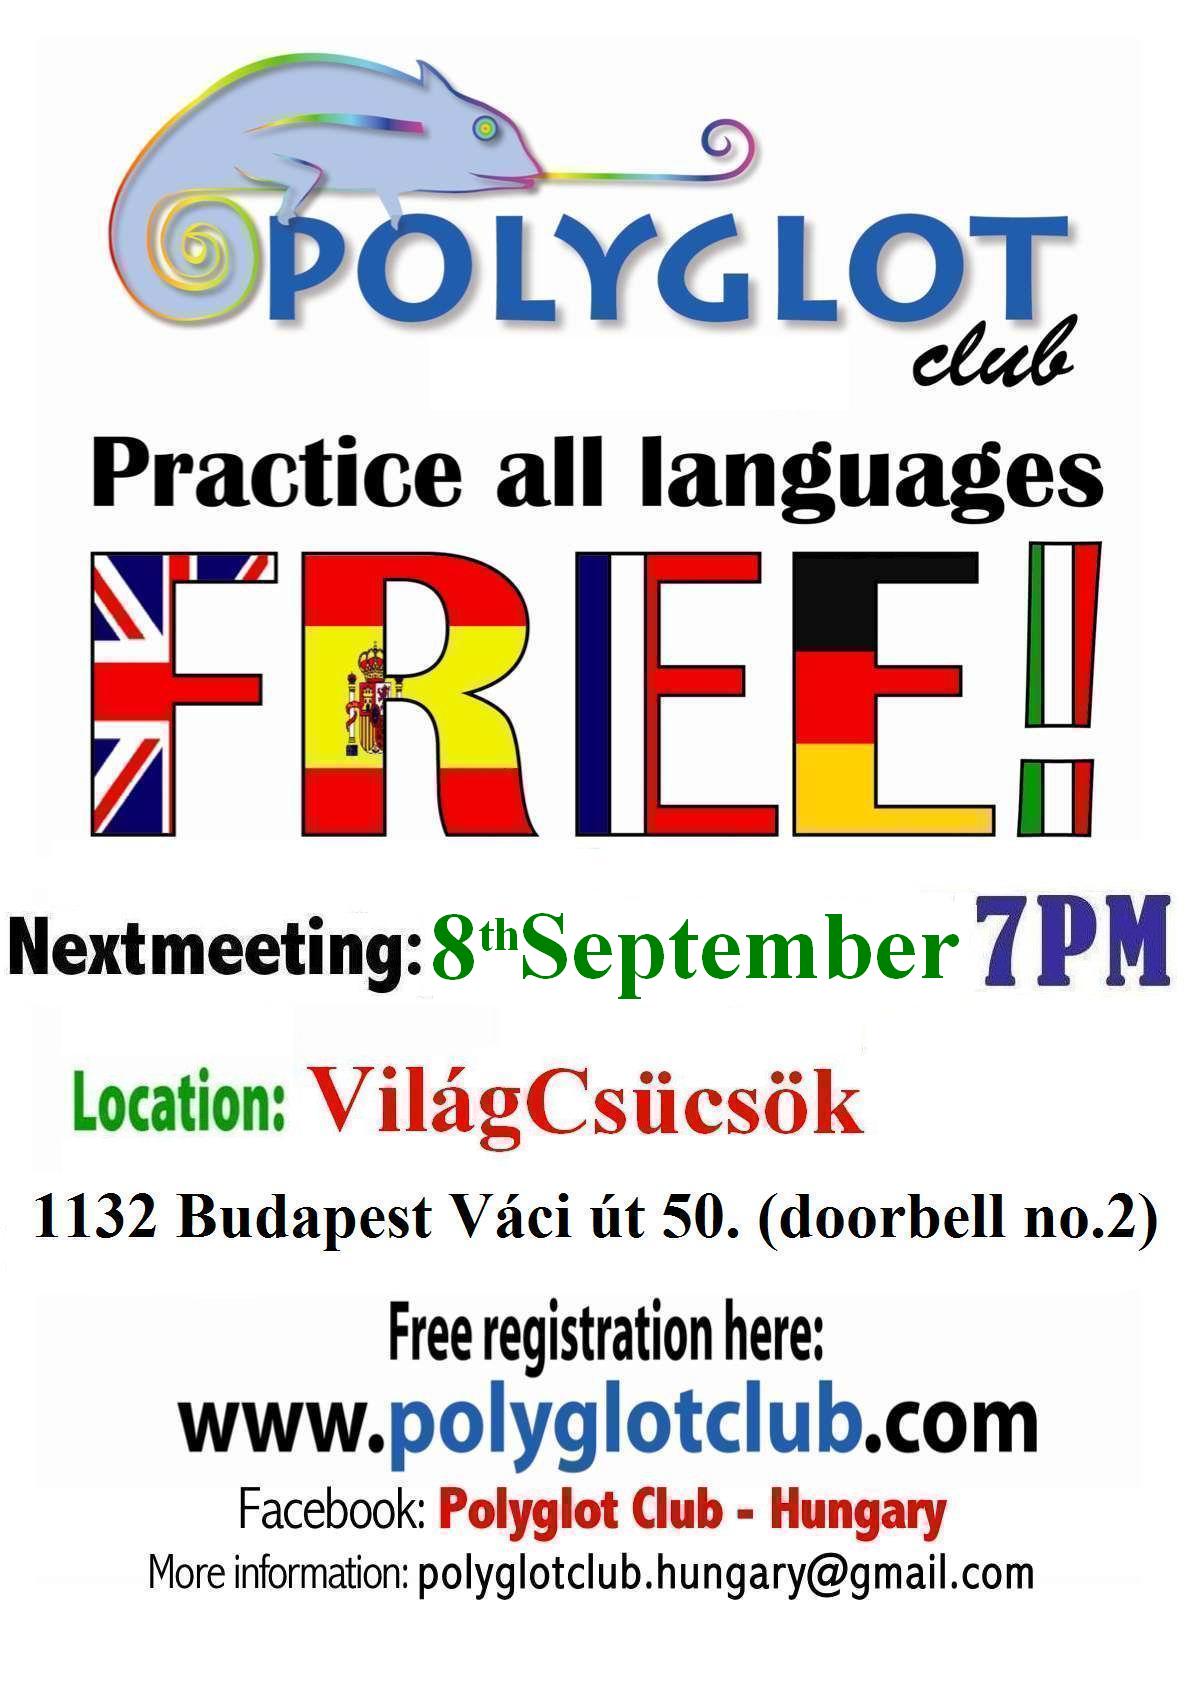 polyglot_vilagcsucsok_8th_september